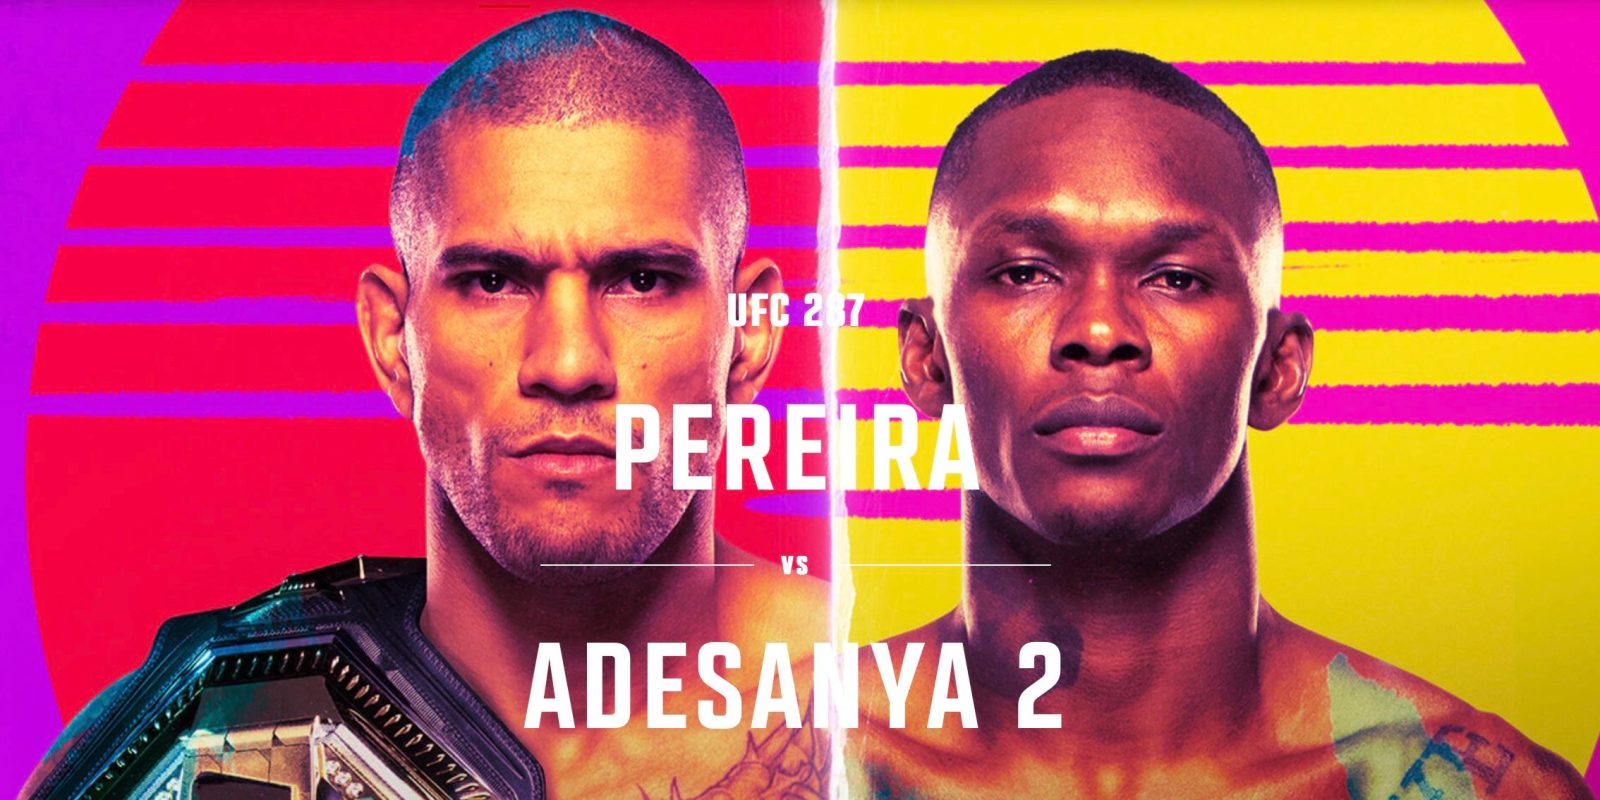 How to watch UFC Pereira vs Adesanya 2